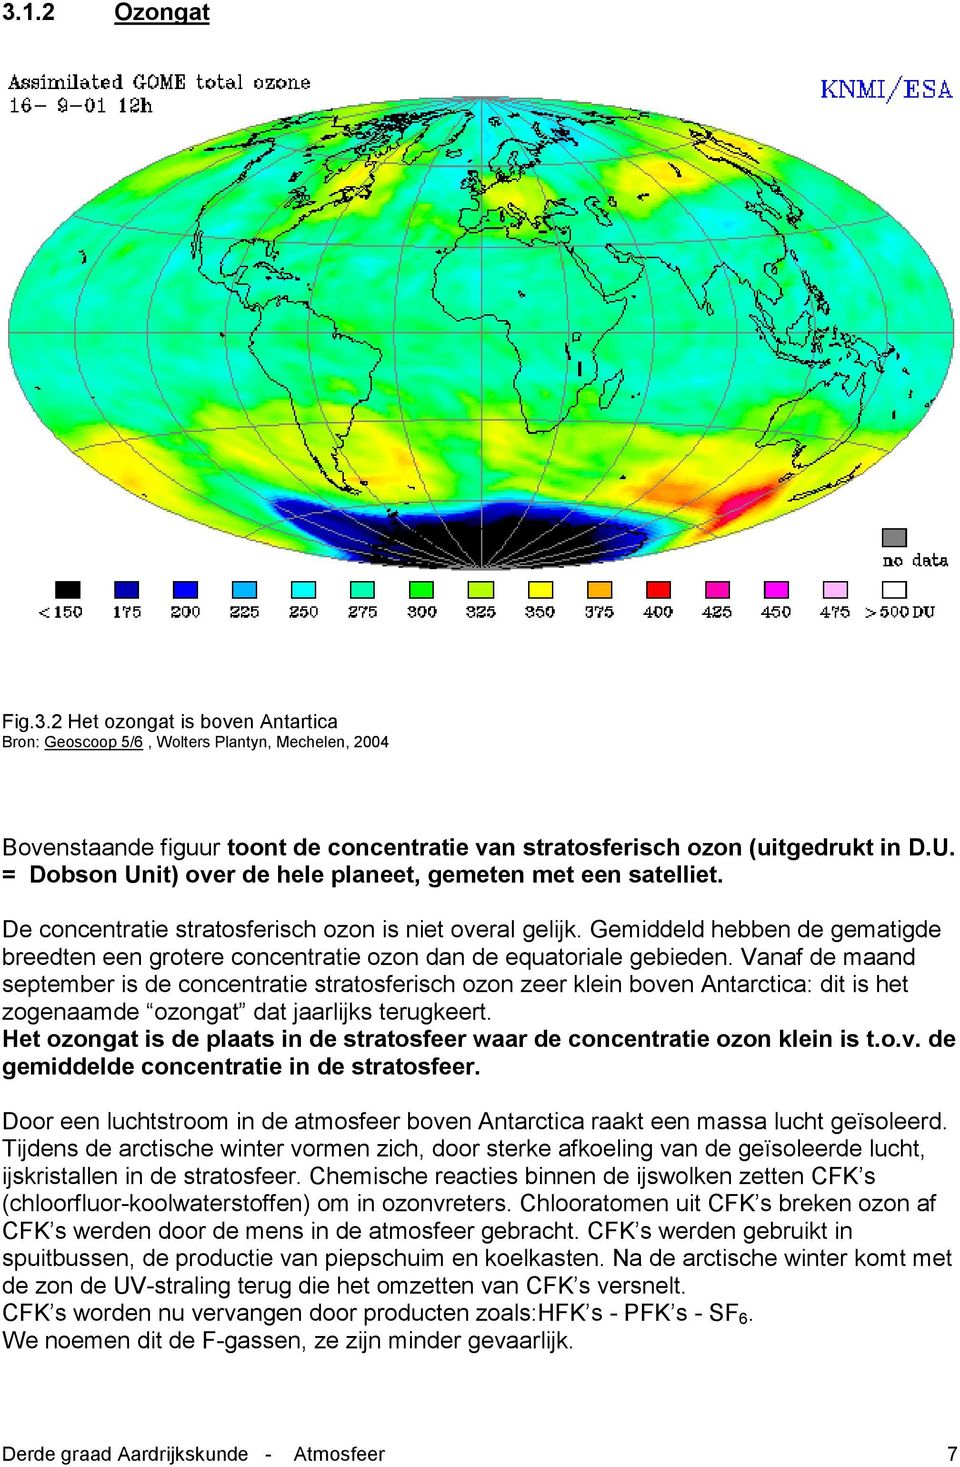 Gemiddeld hebben de gematigde breedten een grotere concentratie ozon dan de equatoriale gebieden.